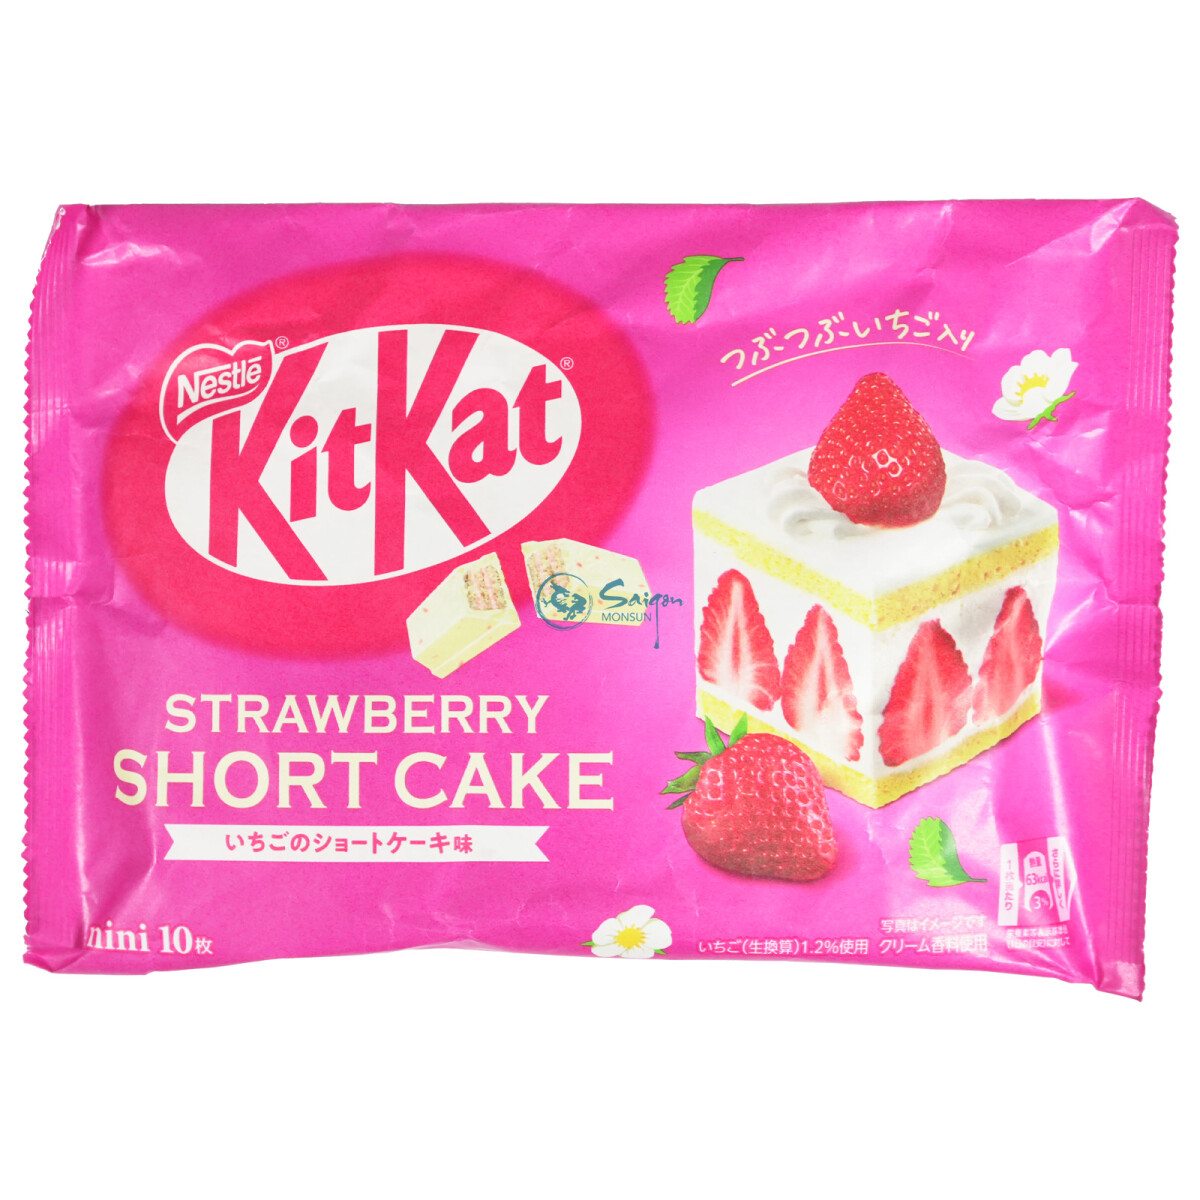 Kitkat Erdbeer Short Cake Geschmack 116g